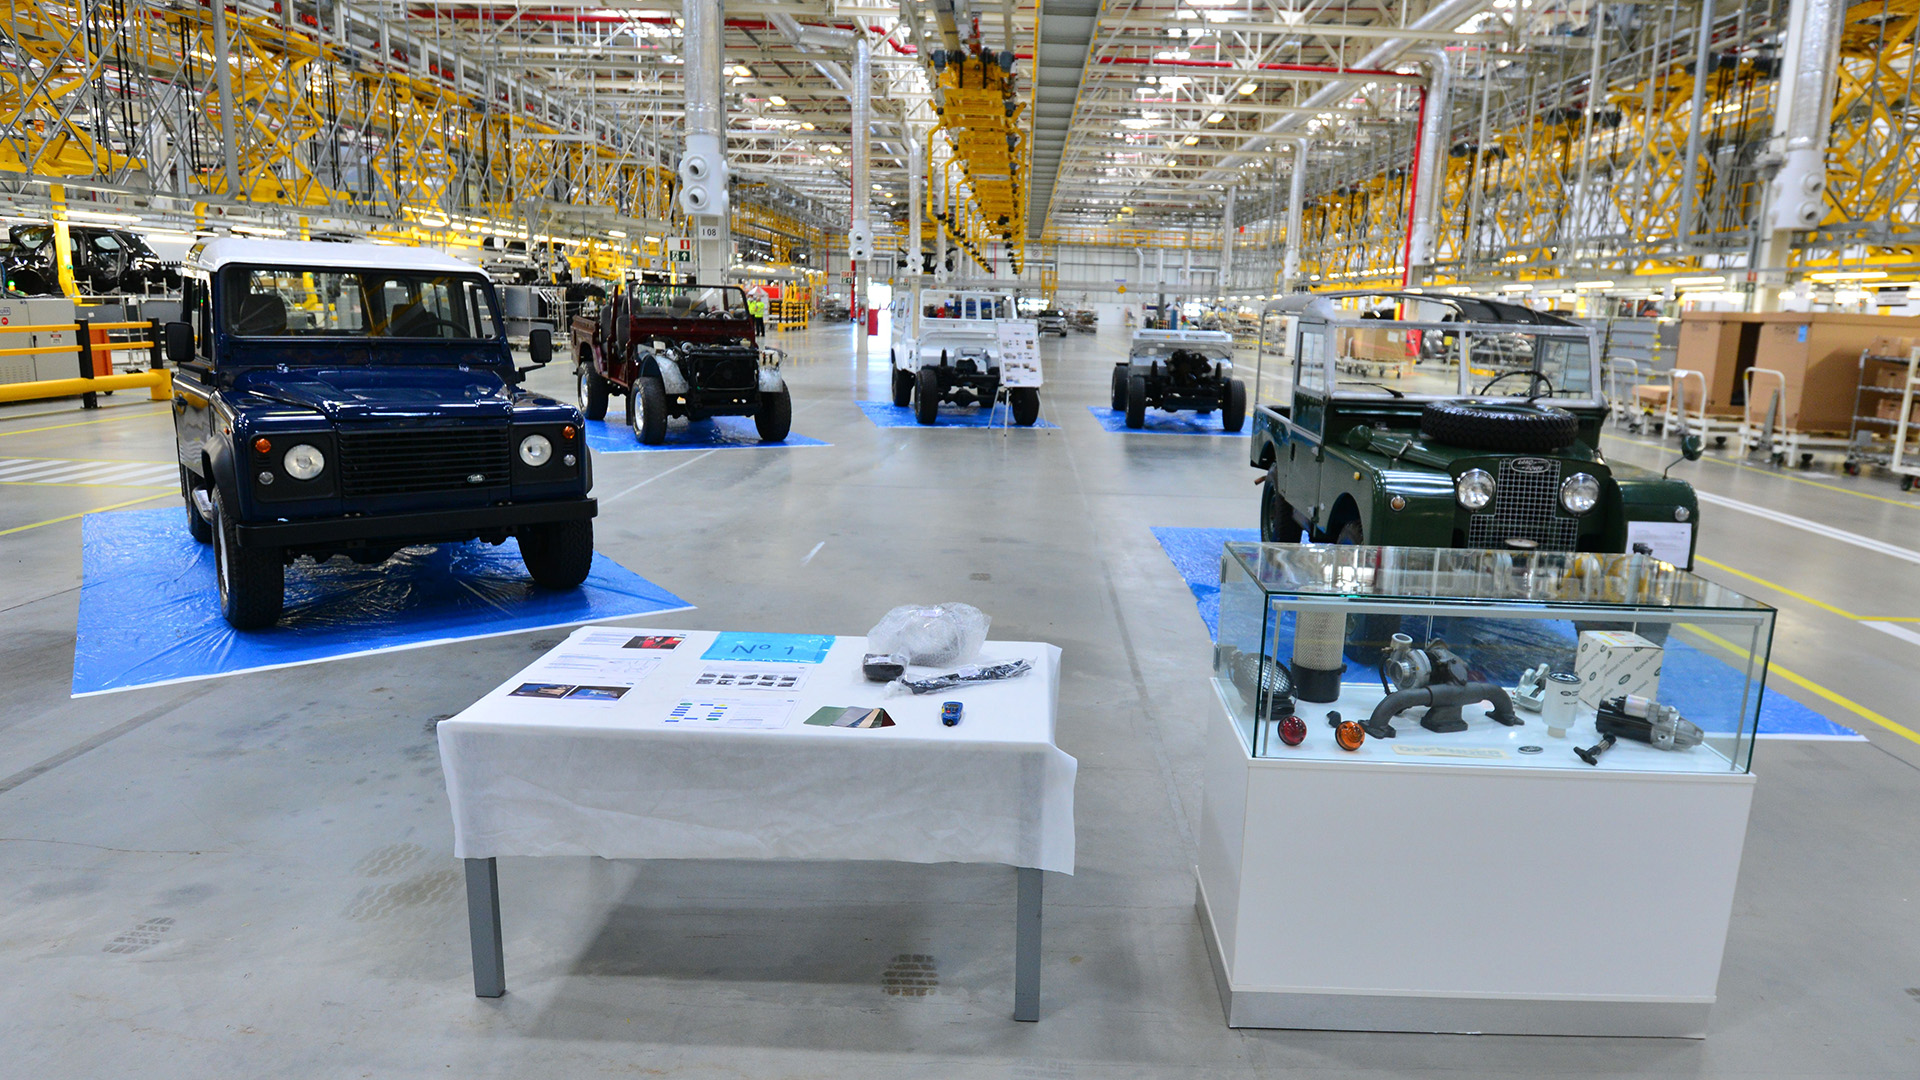 Modelos clássicos restaurados pela Land Rover em Itatiaia (RJ)